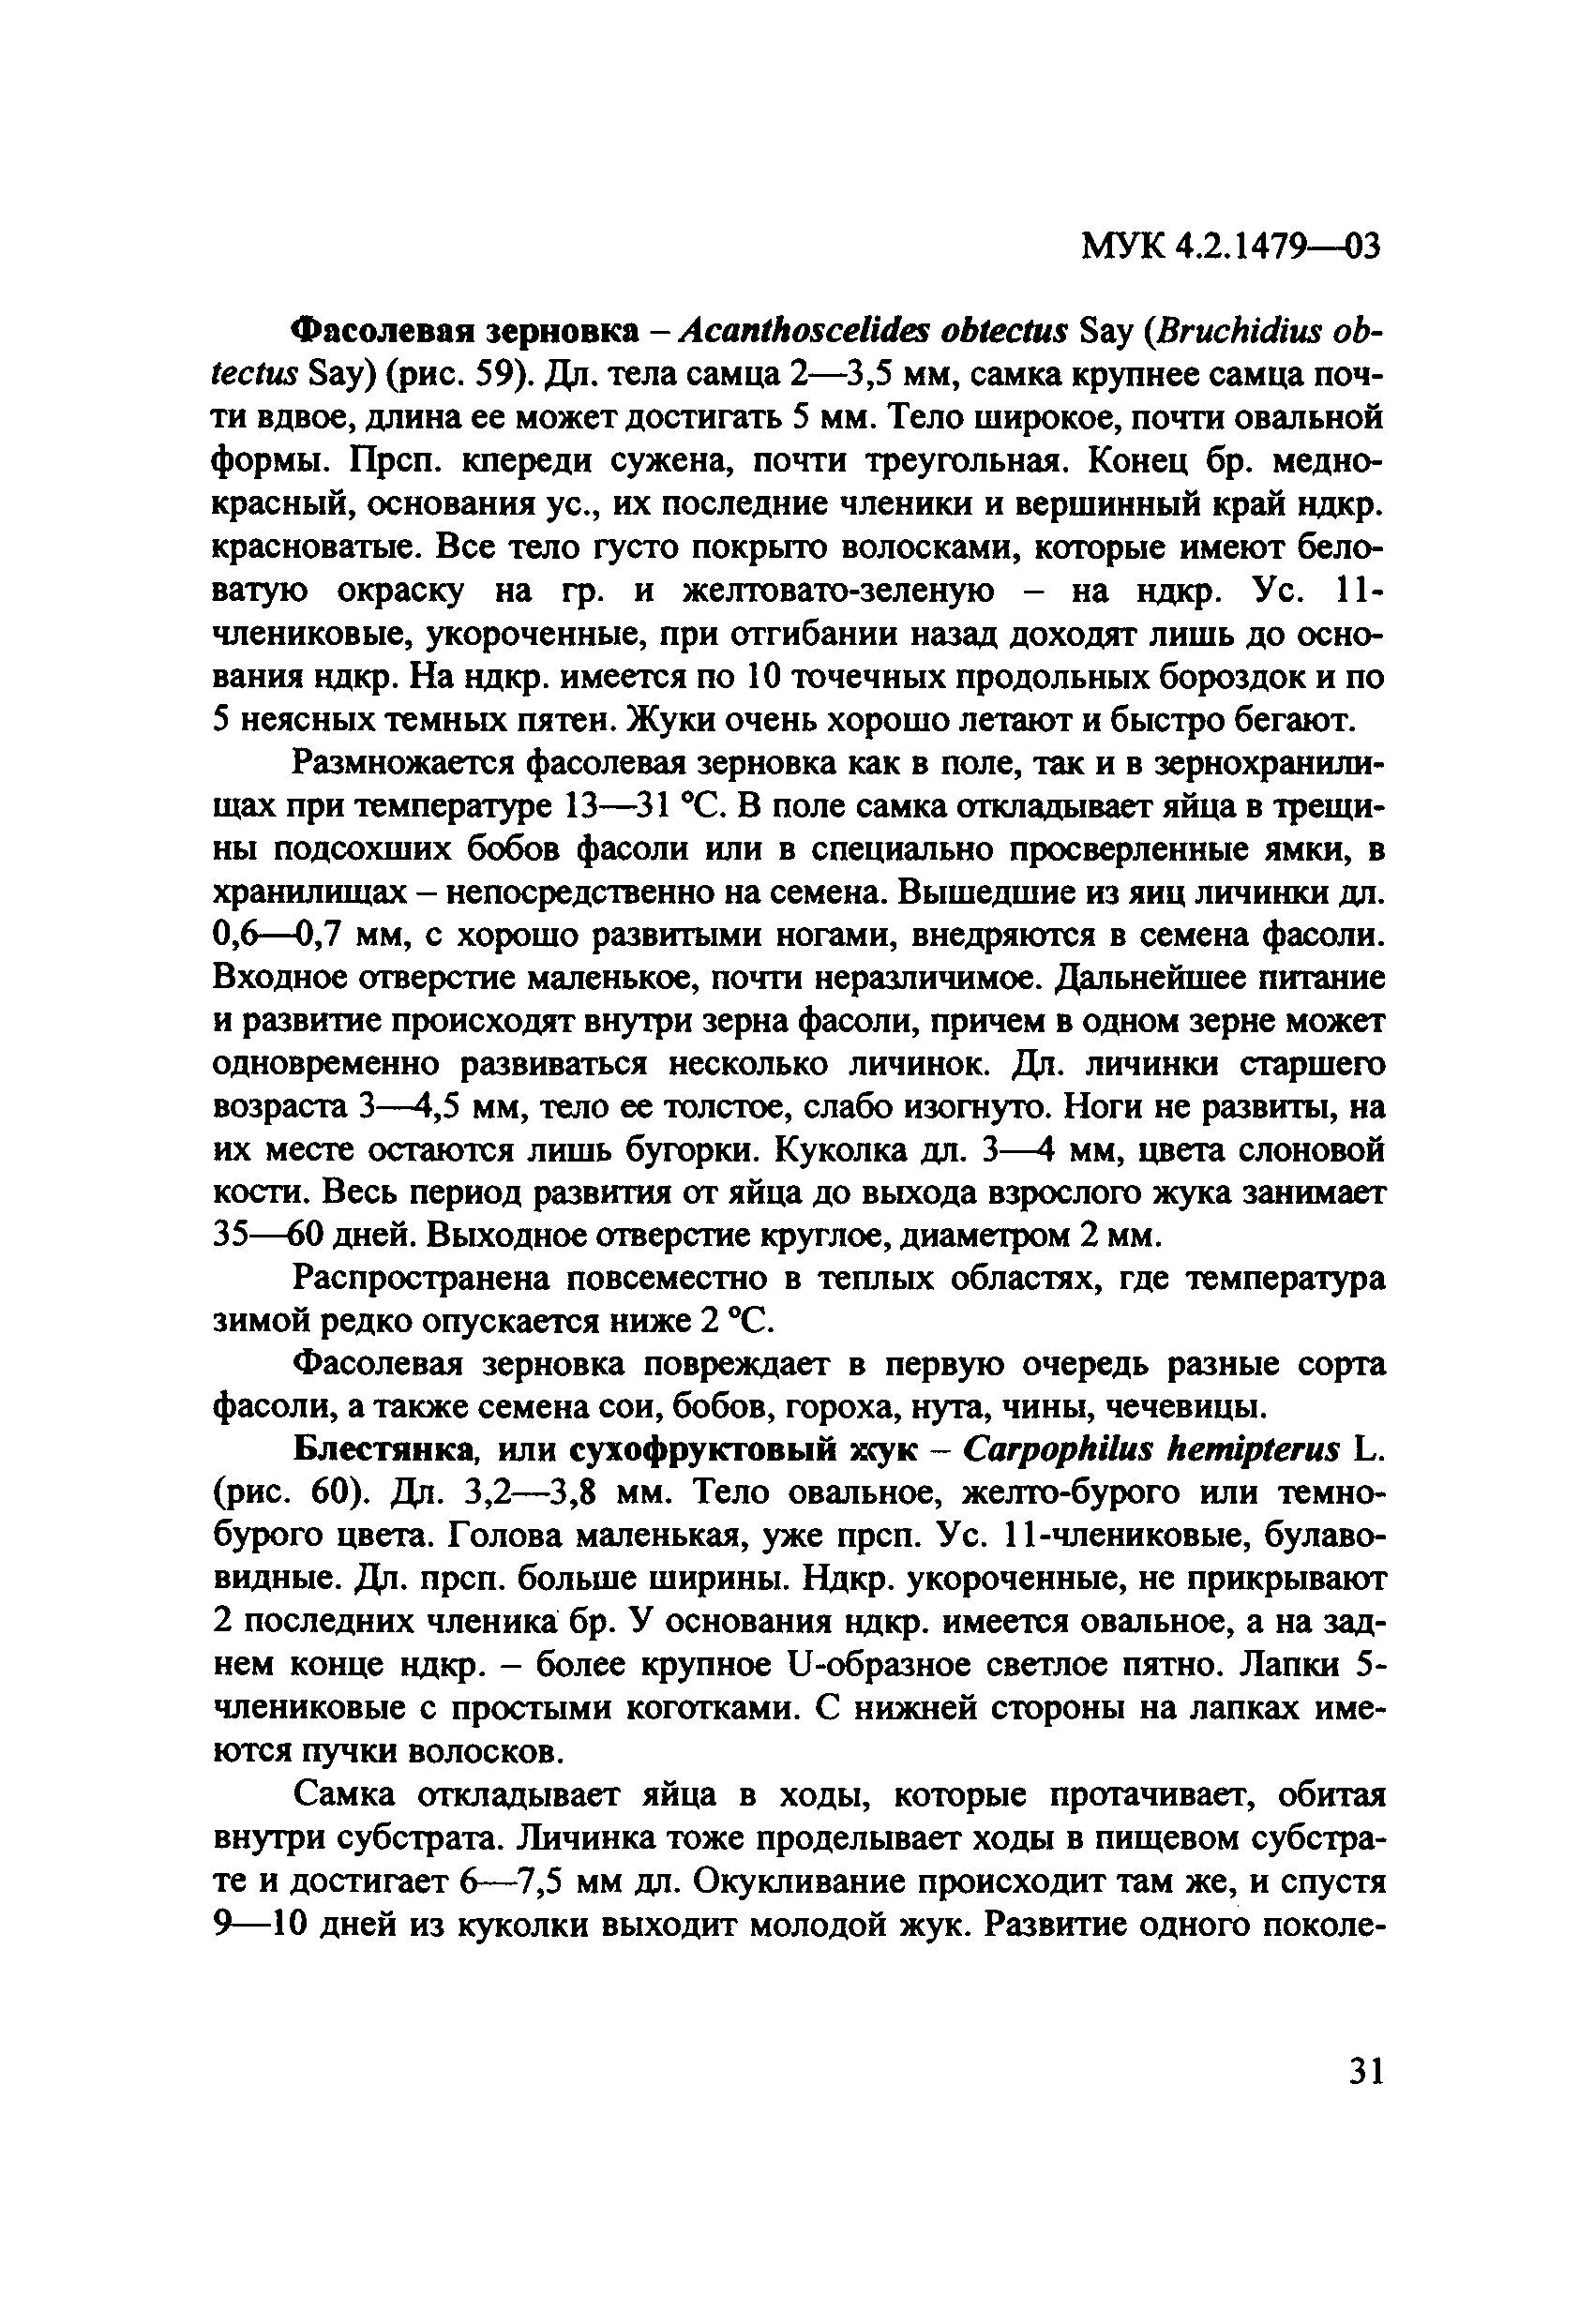 МУК 4.2.1479-03